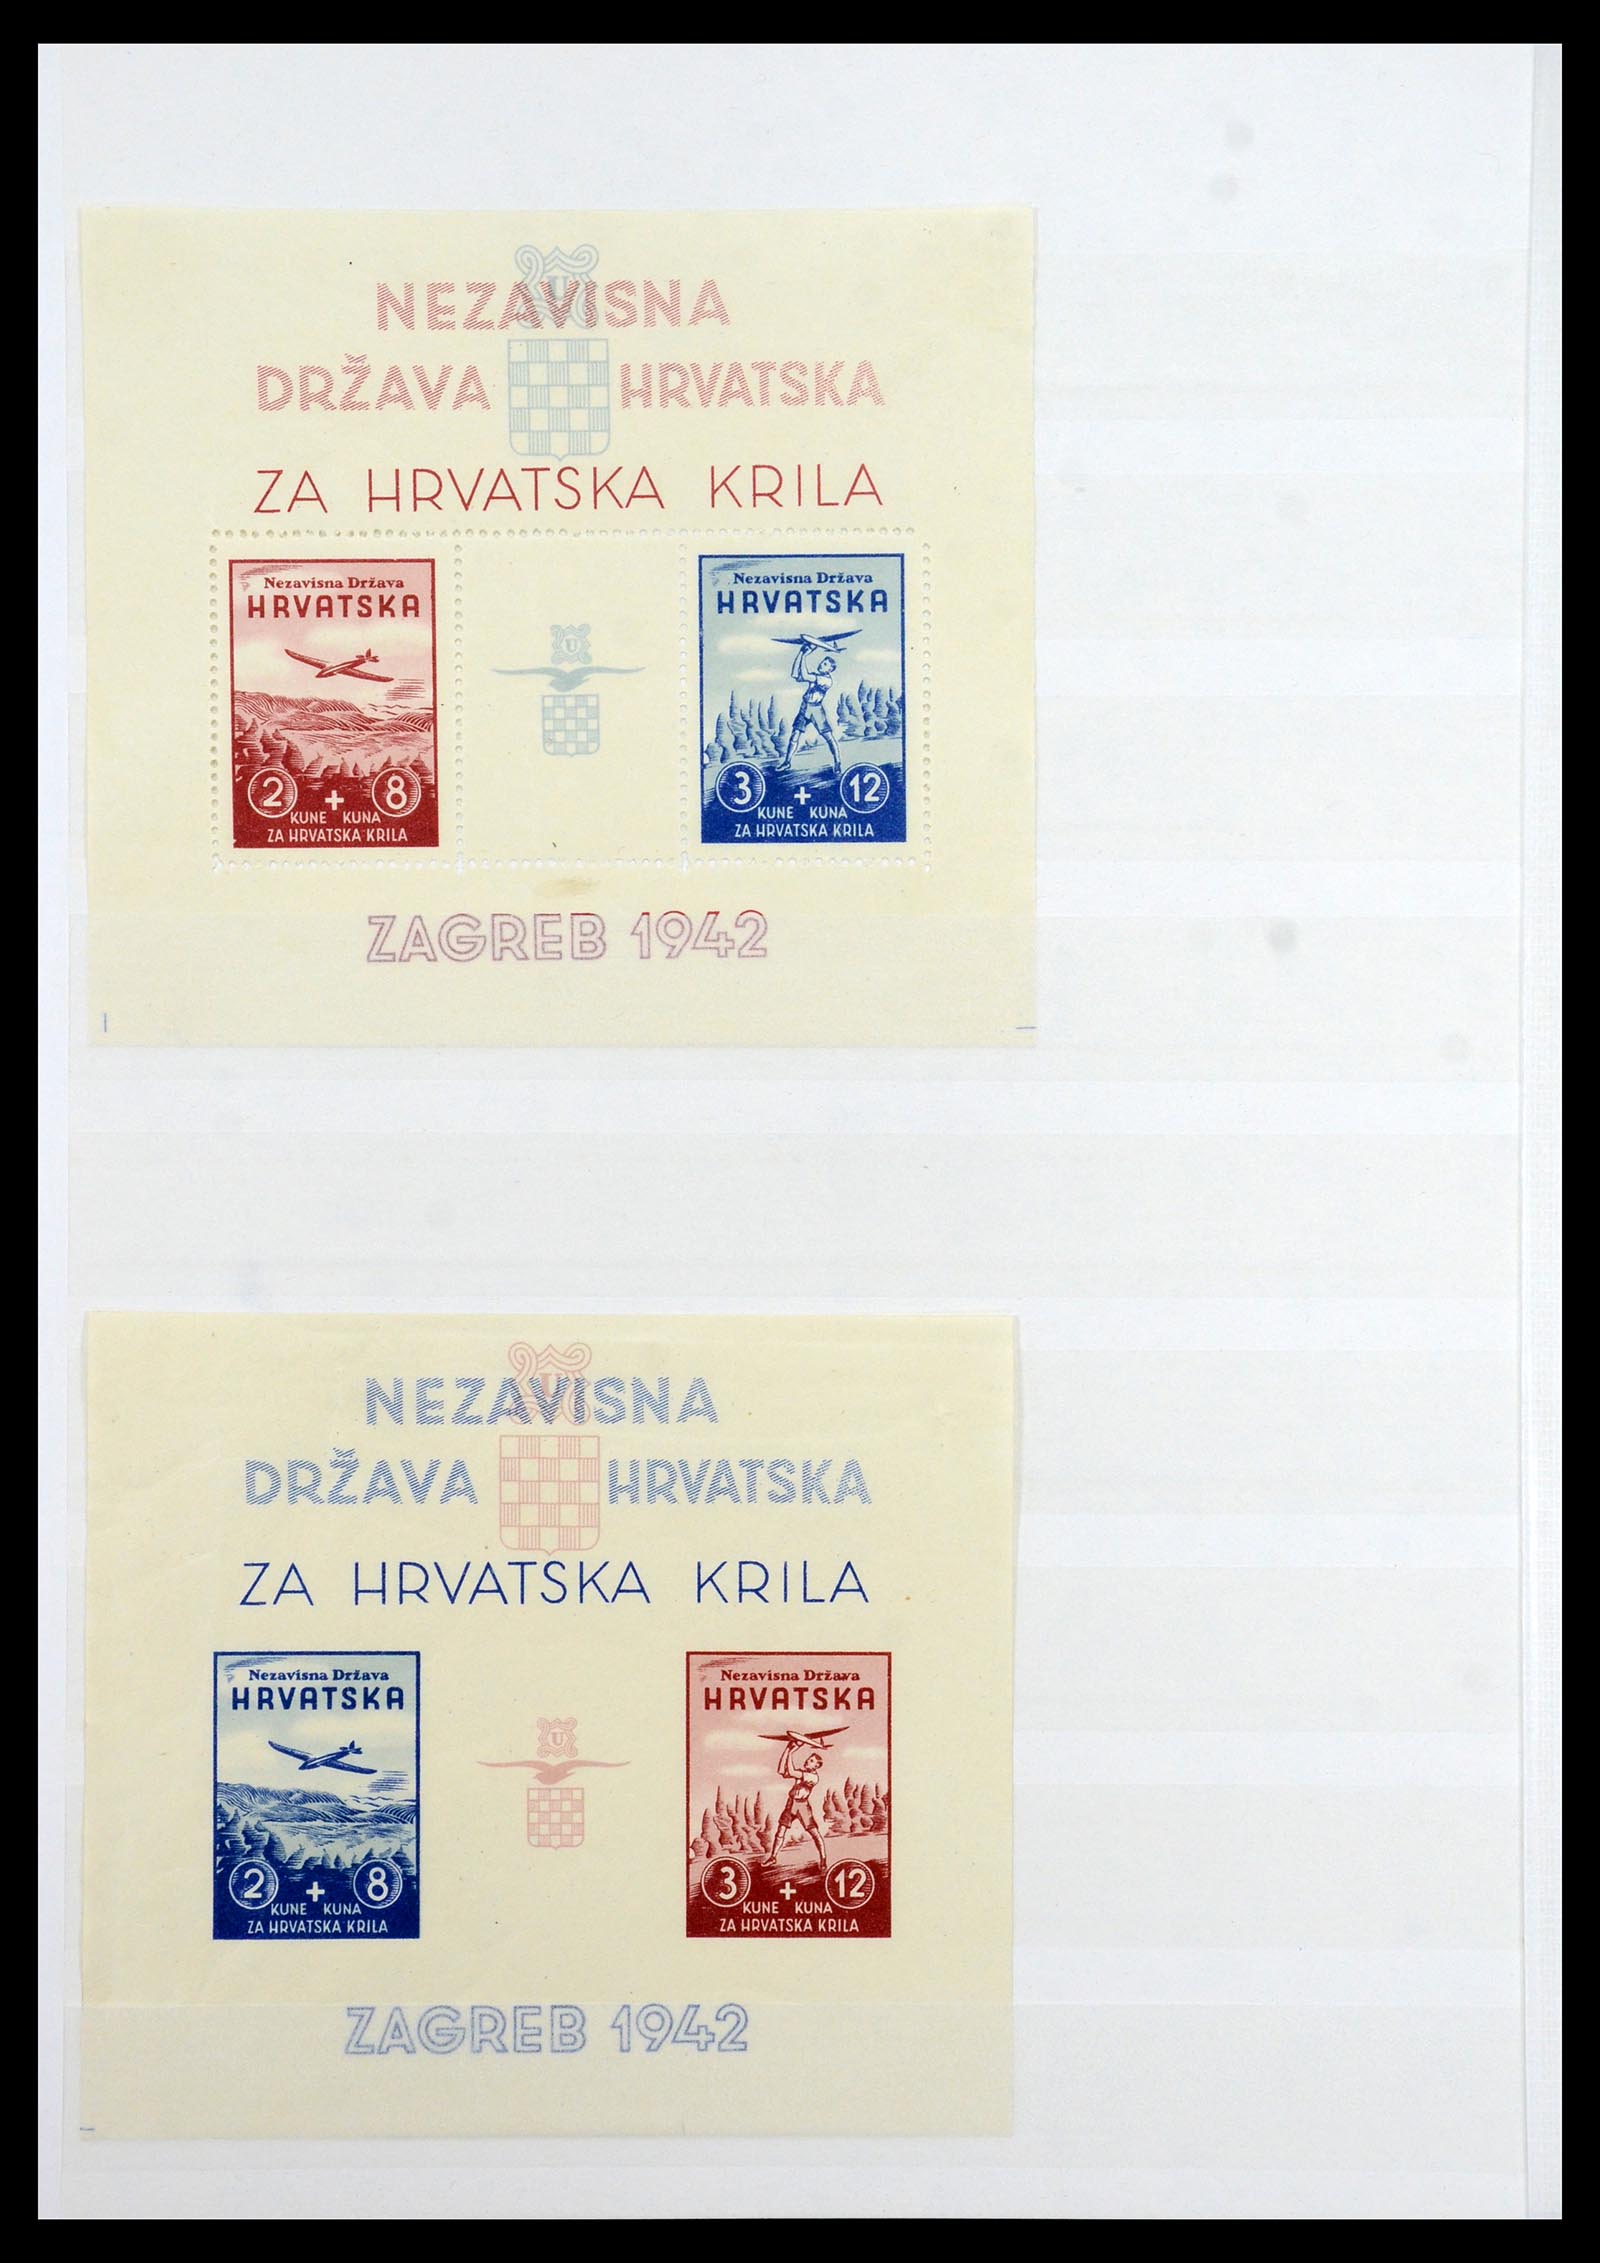 36461 022 - Stamp collection 36461 Slovenia, Croatia and Bosnia-Herzegovina MNH 1991